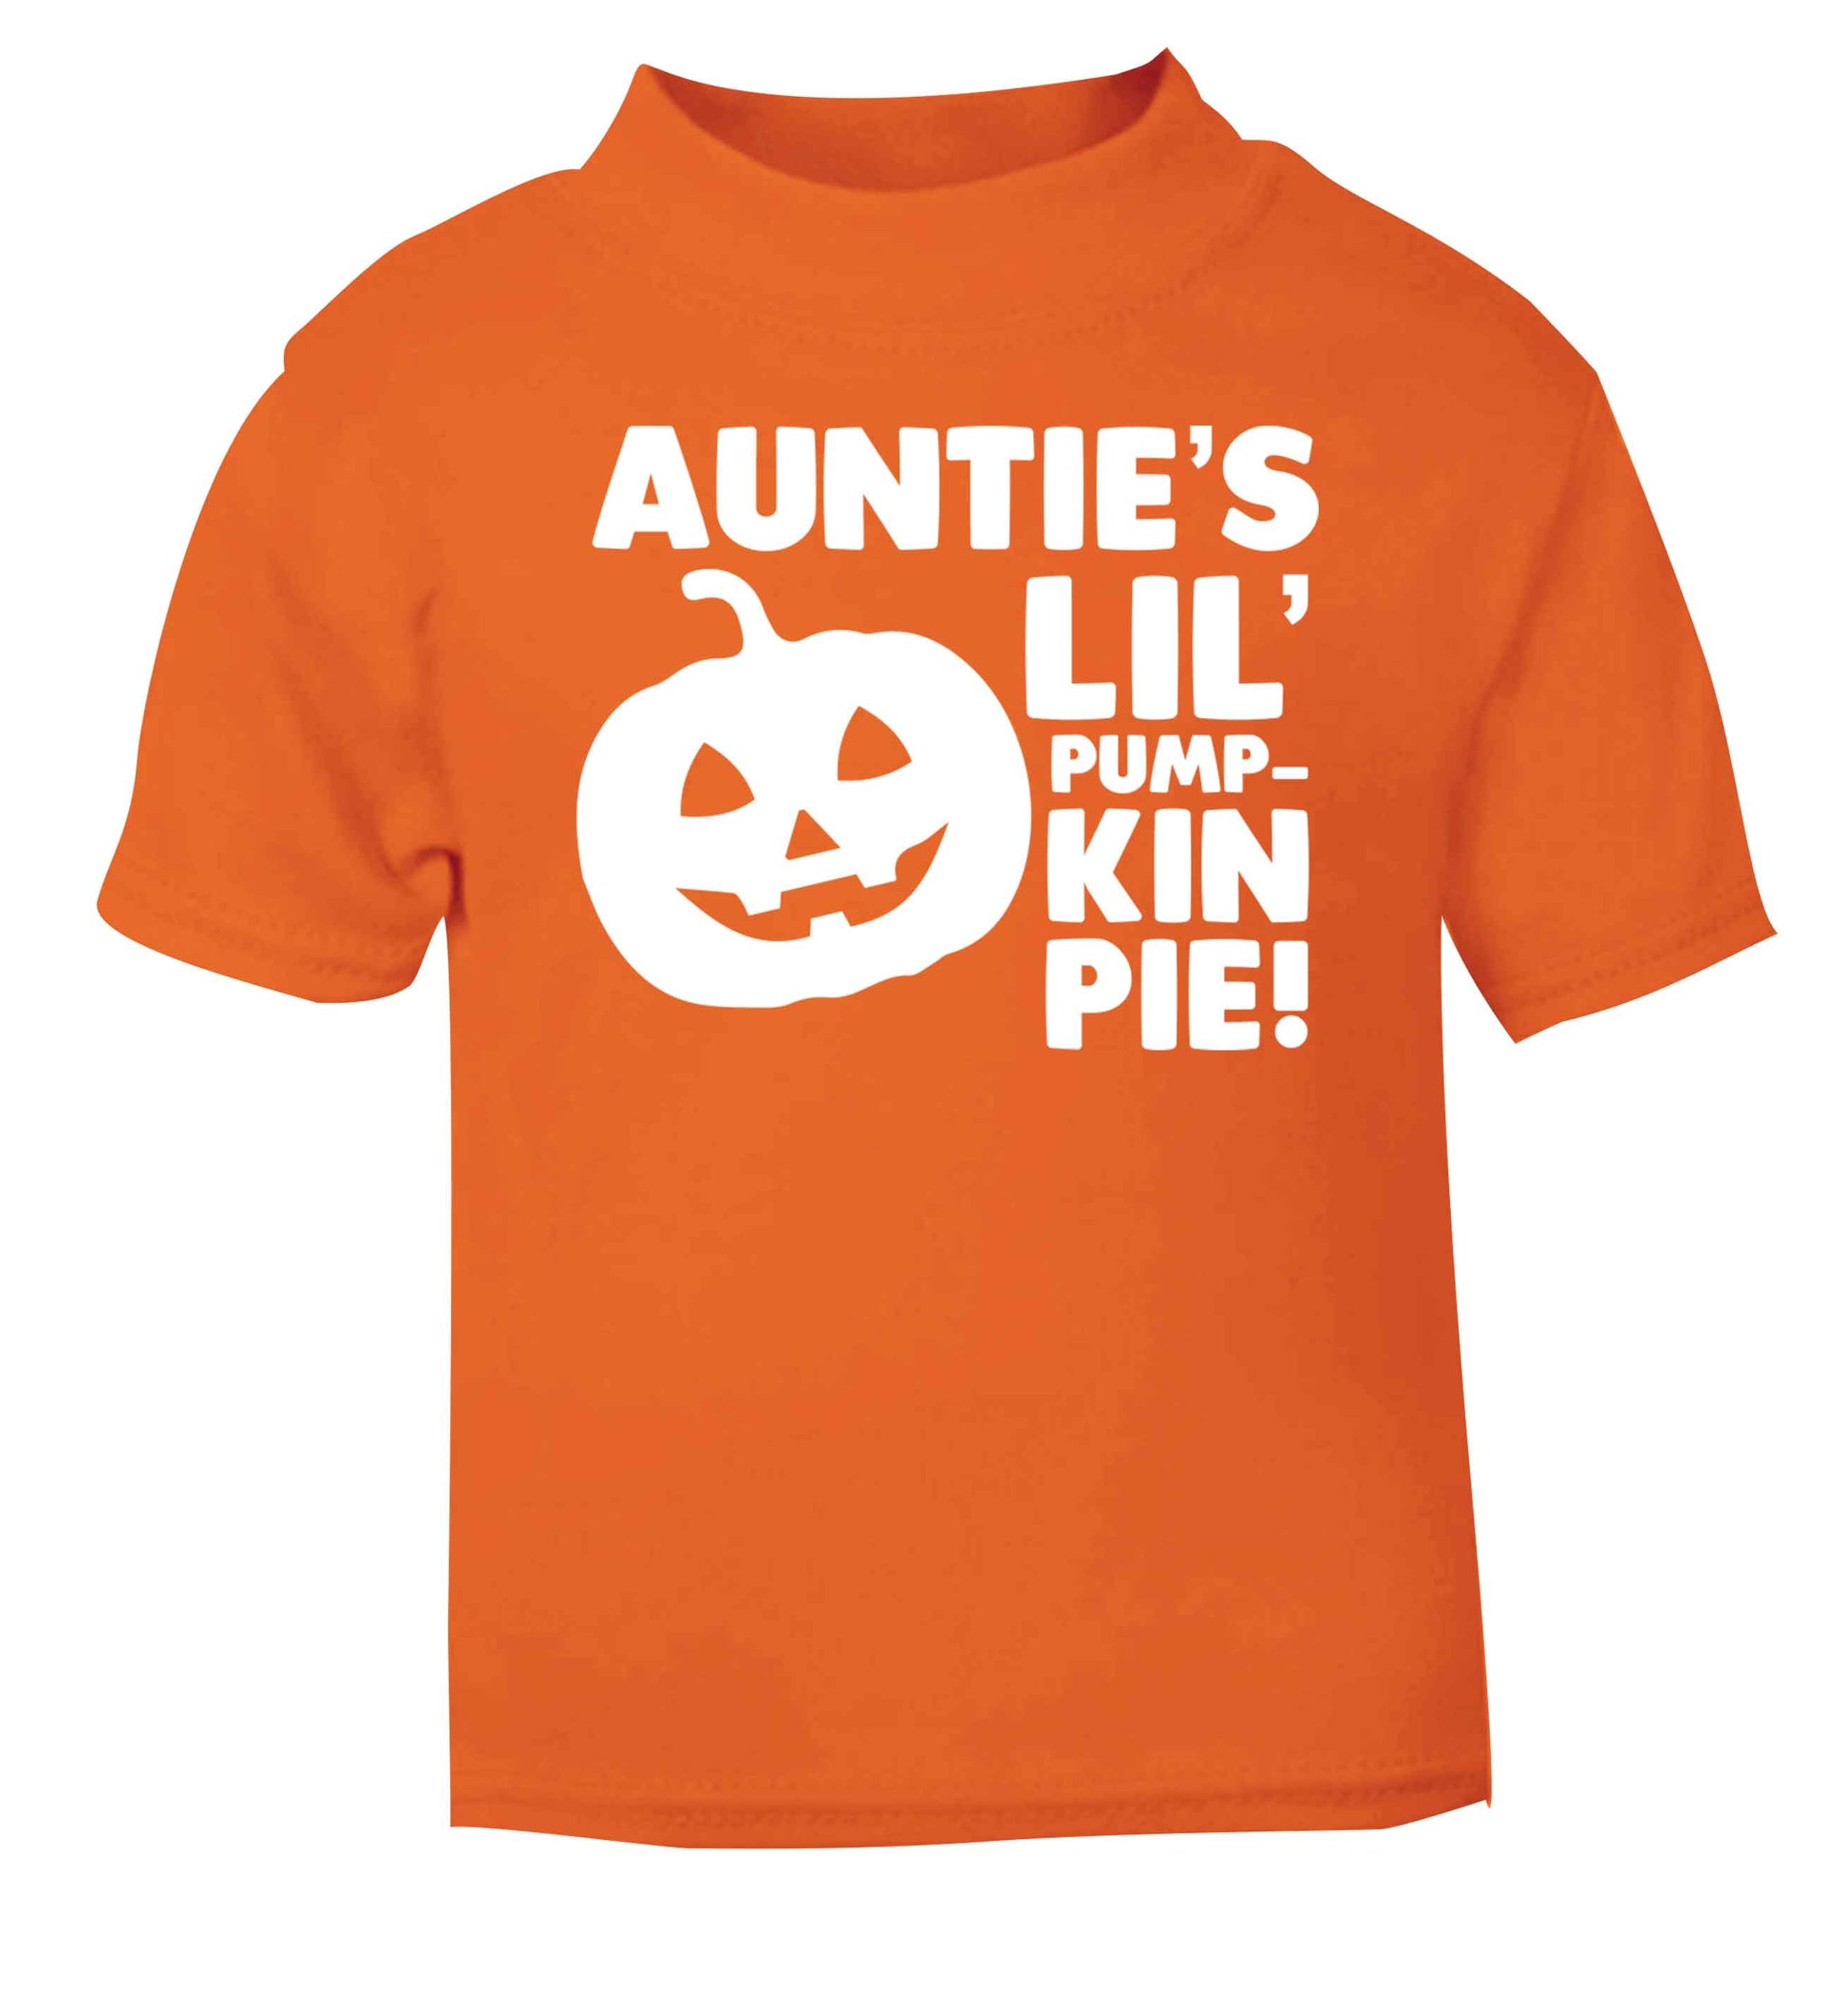 Auntie's lil' pumpkin pie orange baby toddler Tshirt 2 Years